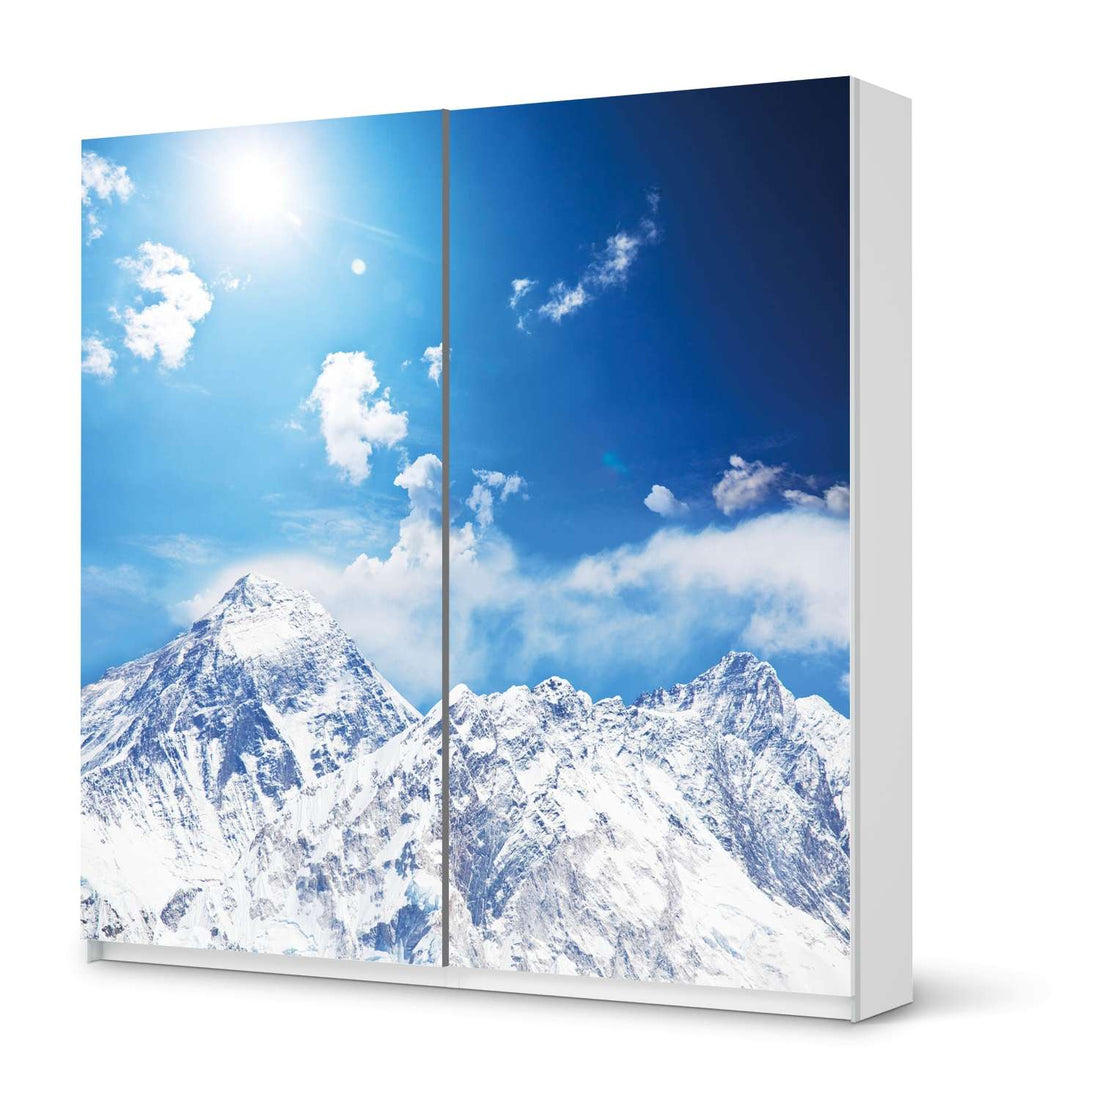 Möbel Klebefolie Everest - IKEA Pax Schrank 201 cm Höhe - Schiebetür - weiss